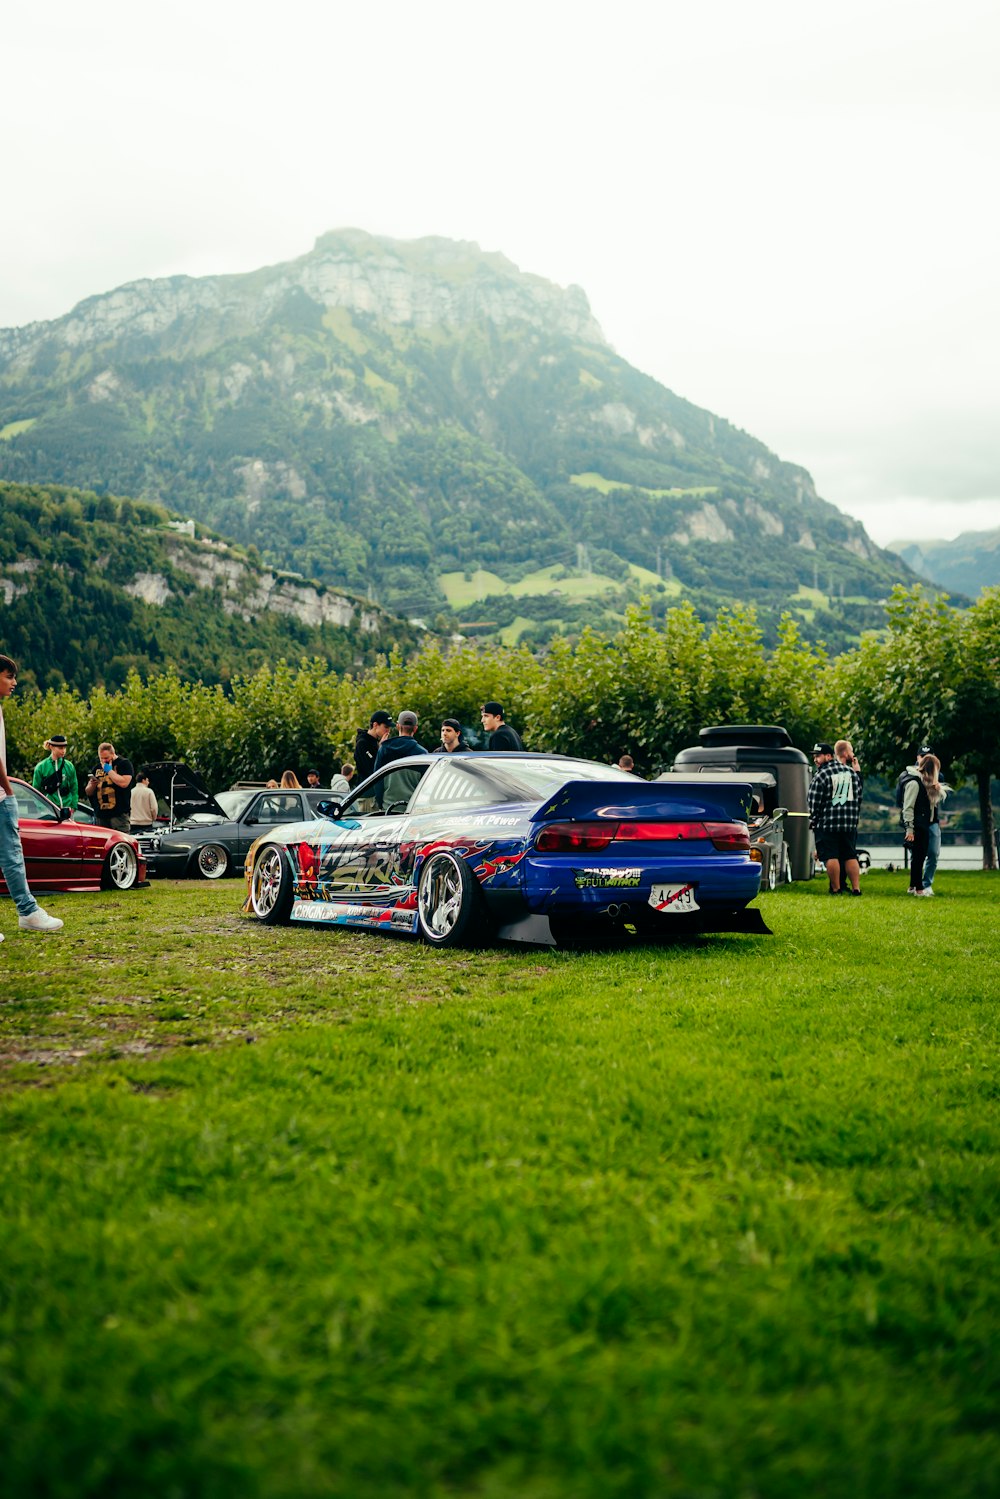 Un grupo de coches aparcados en un campo junto a una montaña